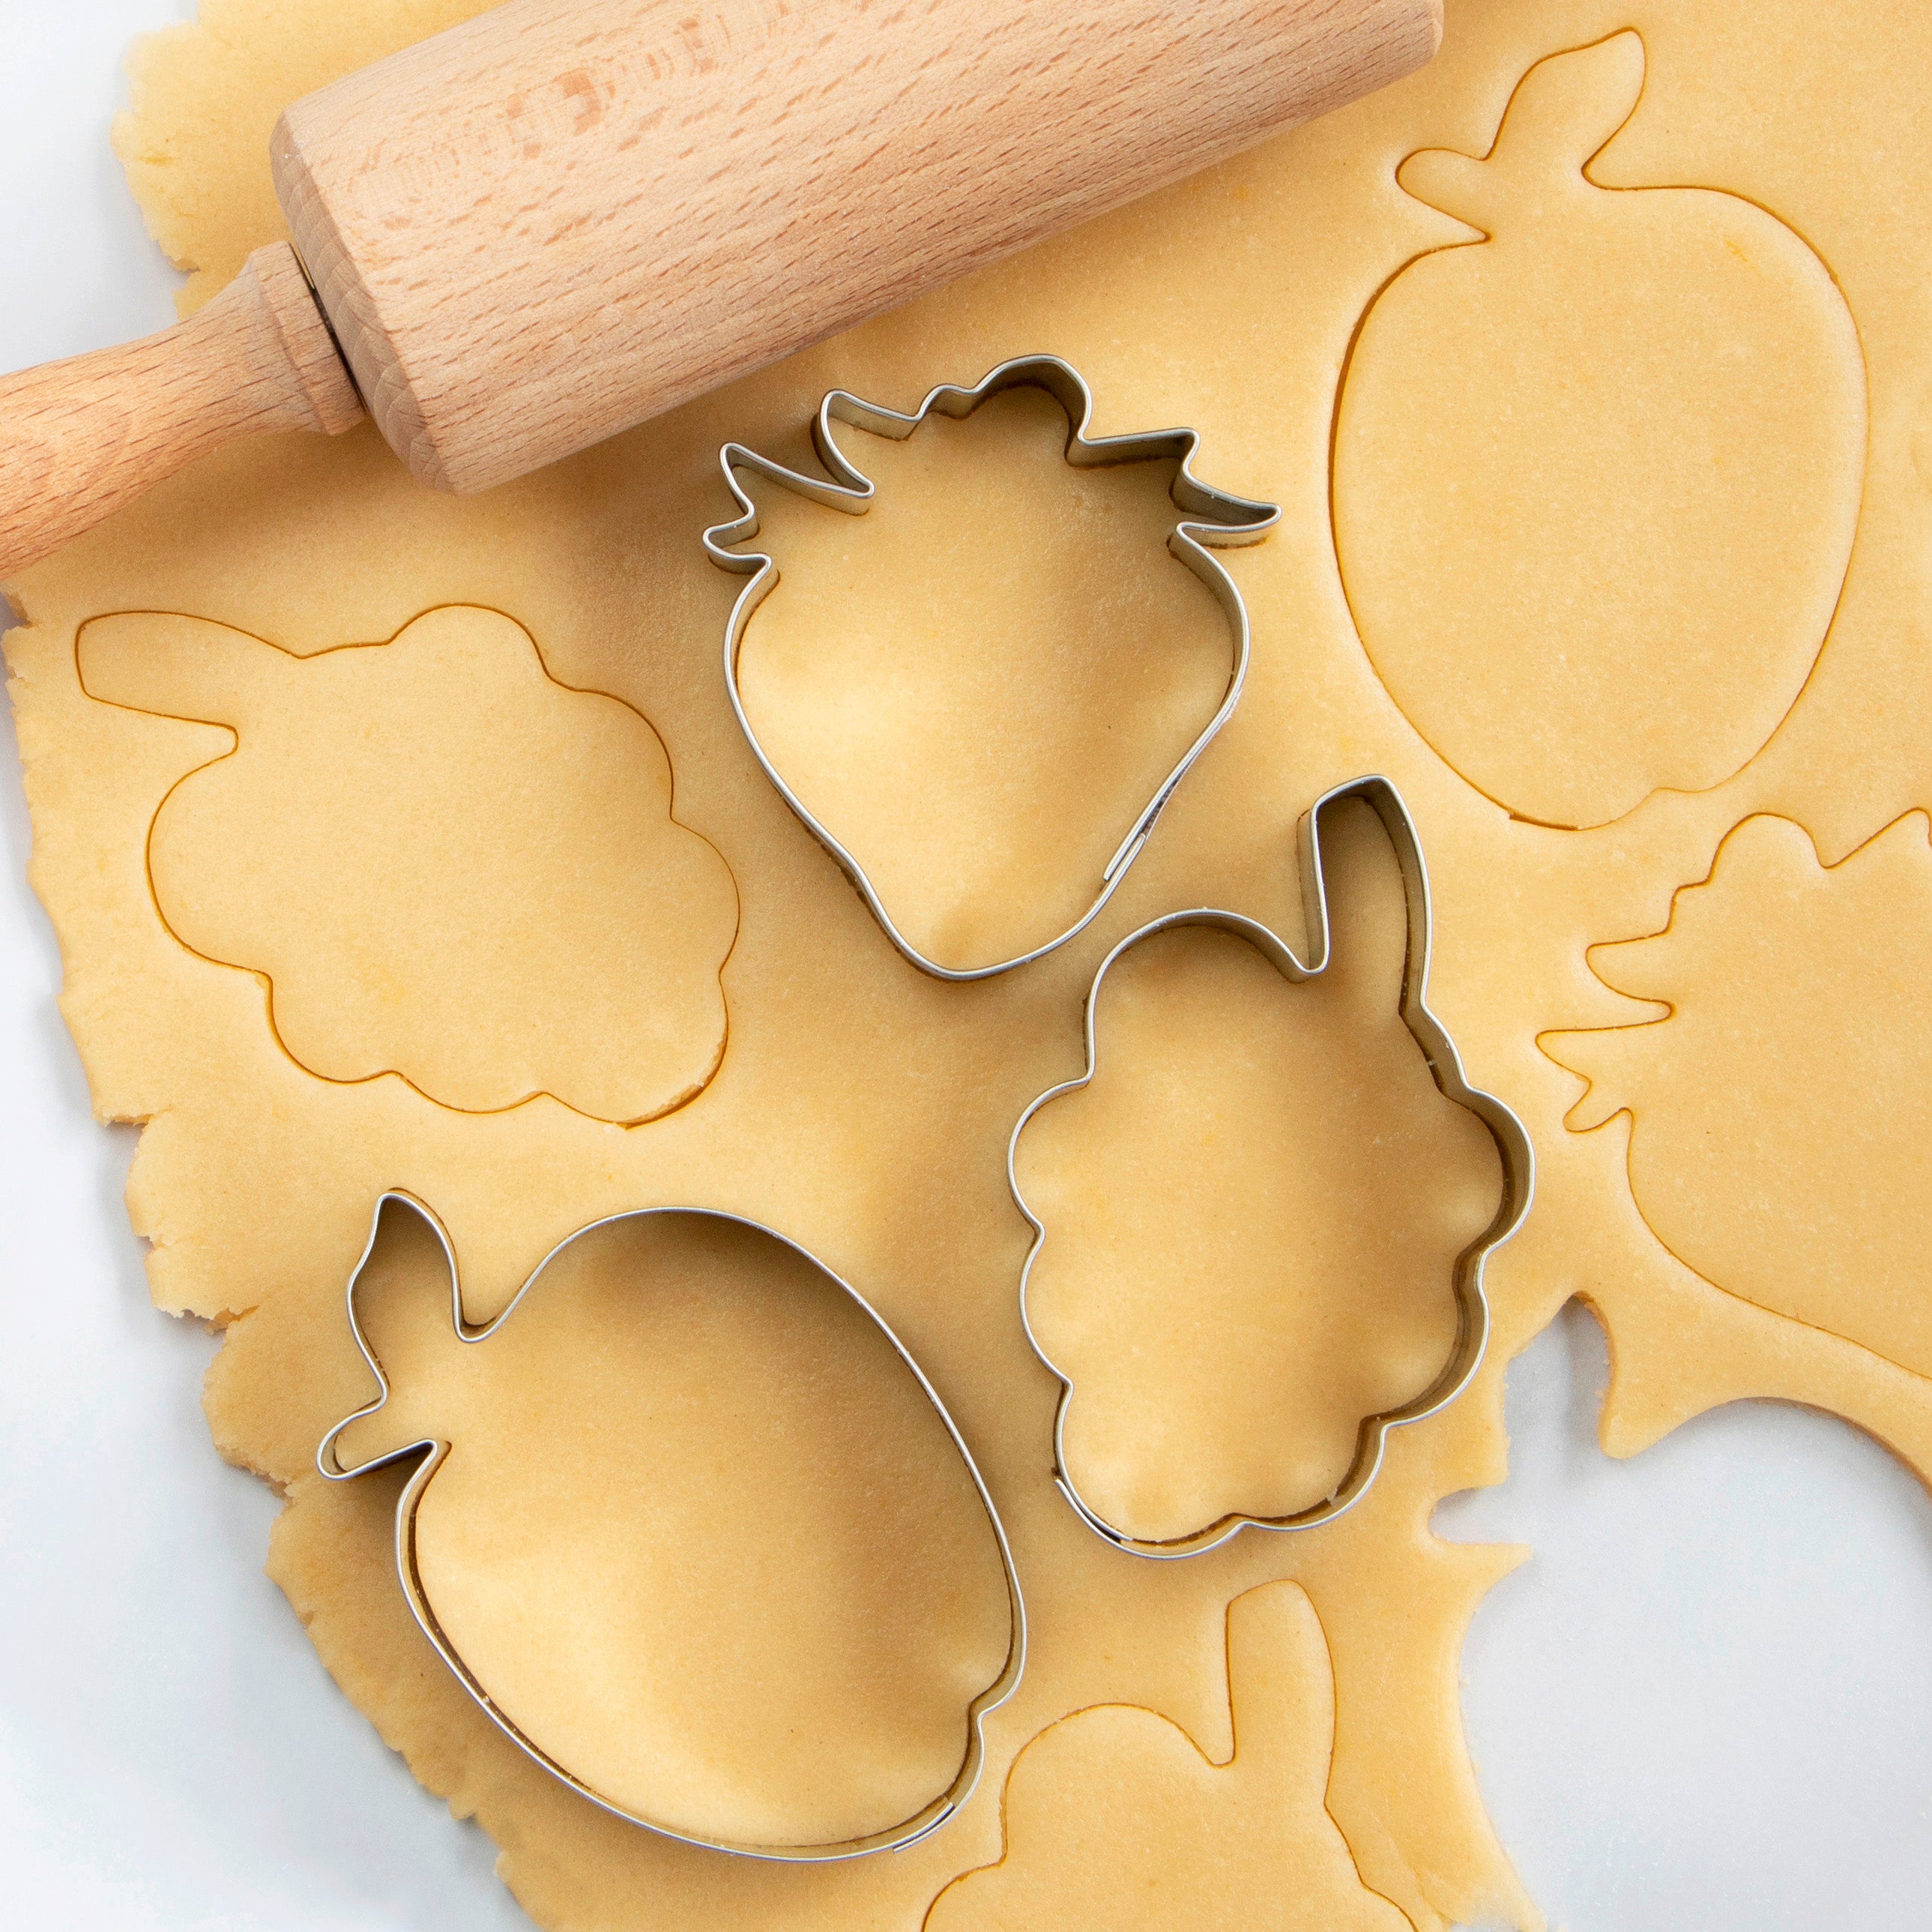 STÄDTER Fruits cookie cutter – Alko Kitchenware